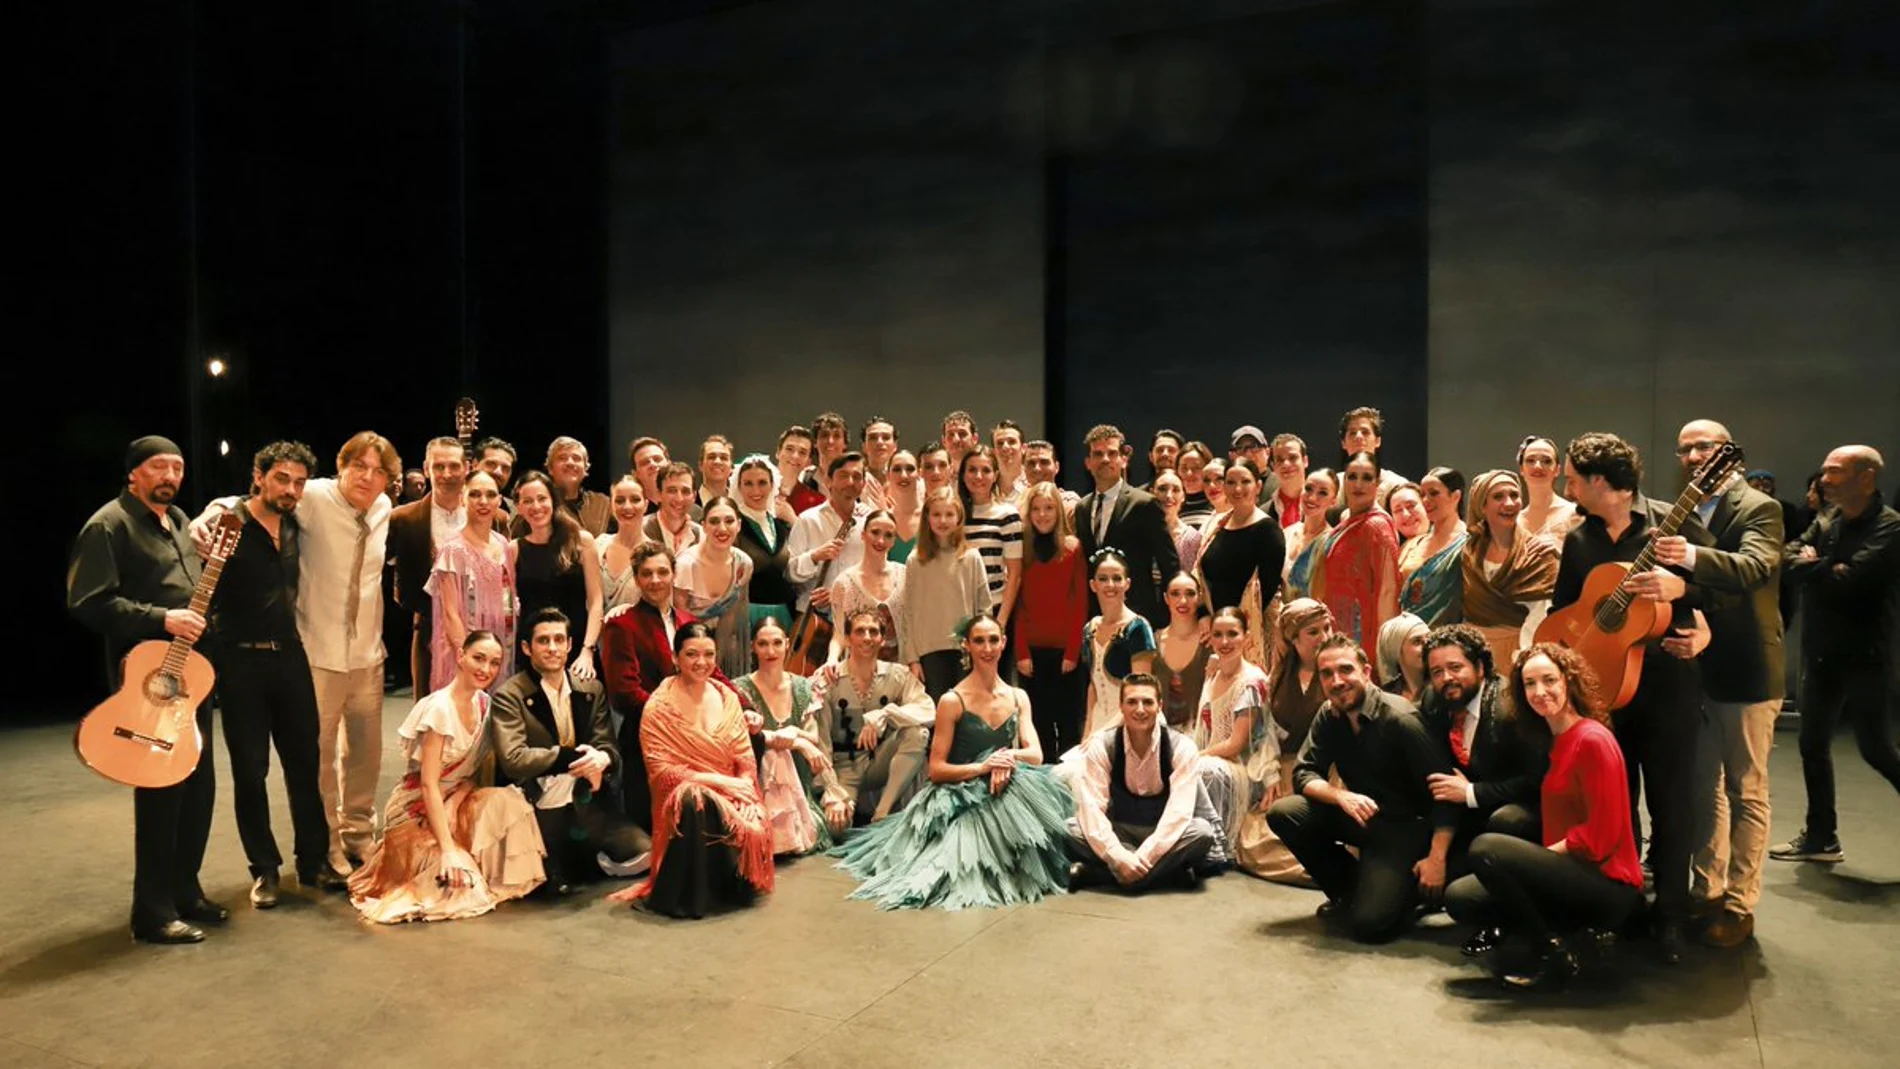 La Reina Letizia, junto a las Infantas Leonor y Sofía, posan con la compañía de Ballet Nacional en su 40 aniversario / Cuenta oficial de Twitter Ballet Nacional